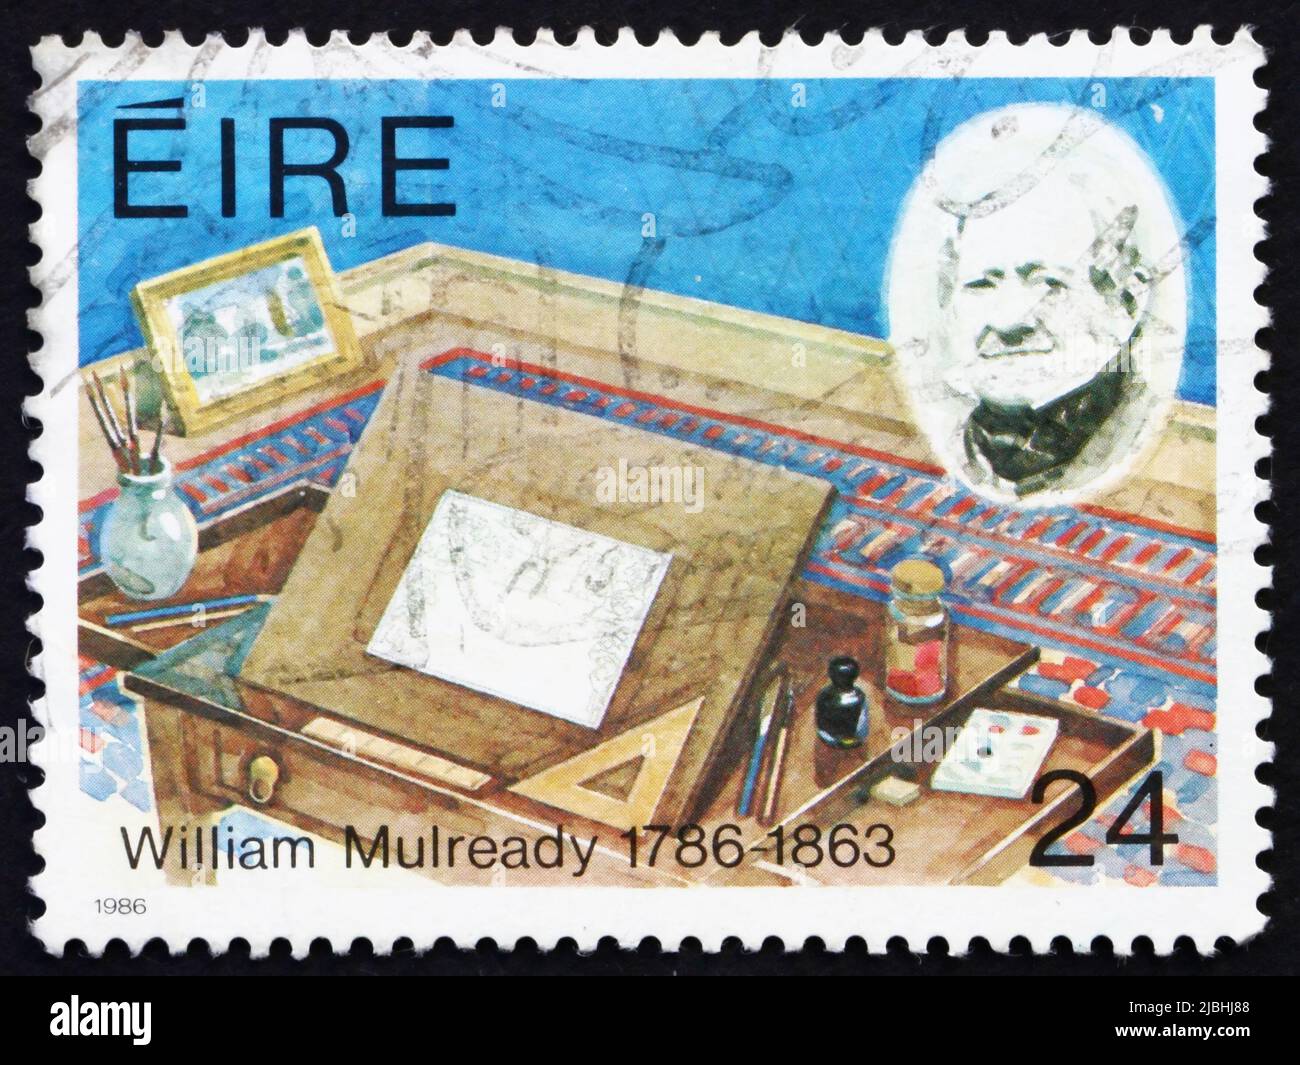 IRLANDE - VERS 1986: Un timbre imprimé en Irlande montre William Mulready, concepteur de feuilles de lettre, vers 1986 Banque D'Images